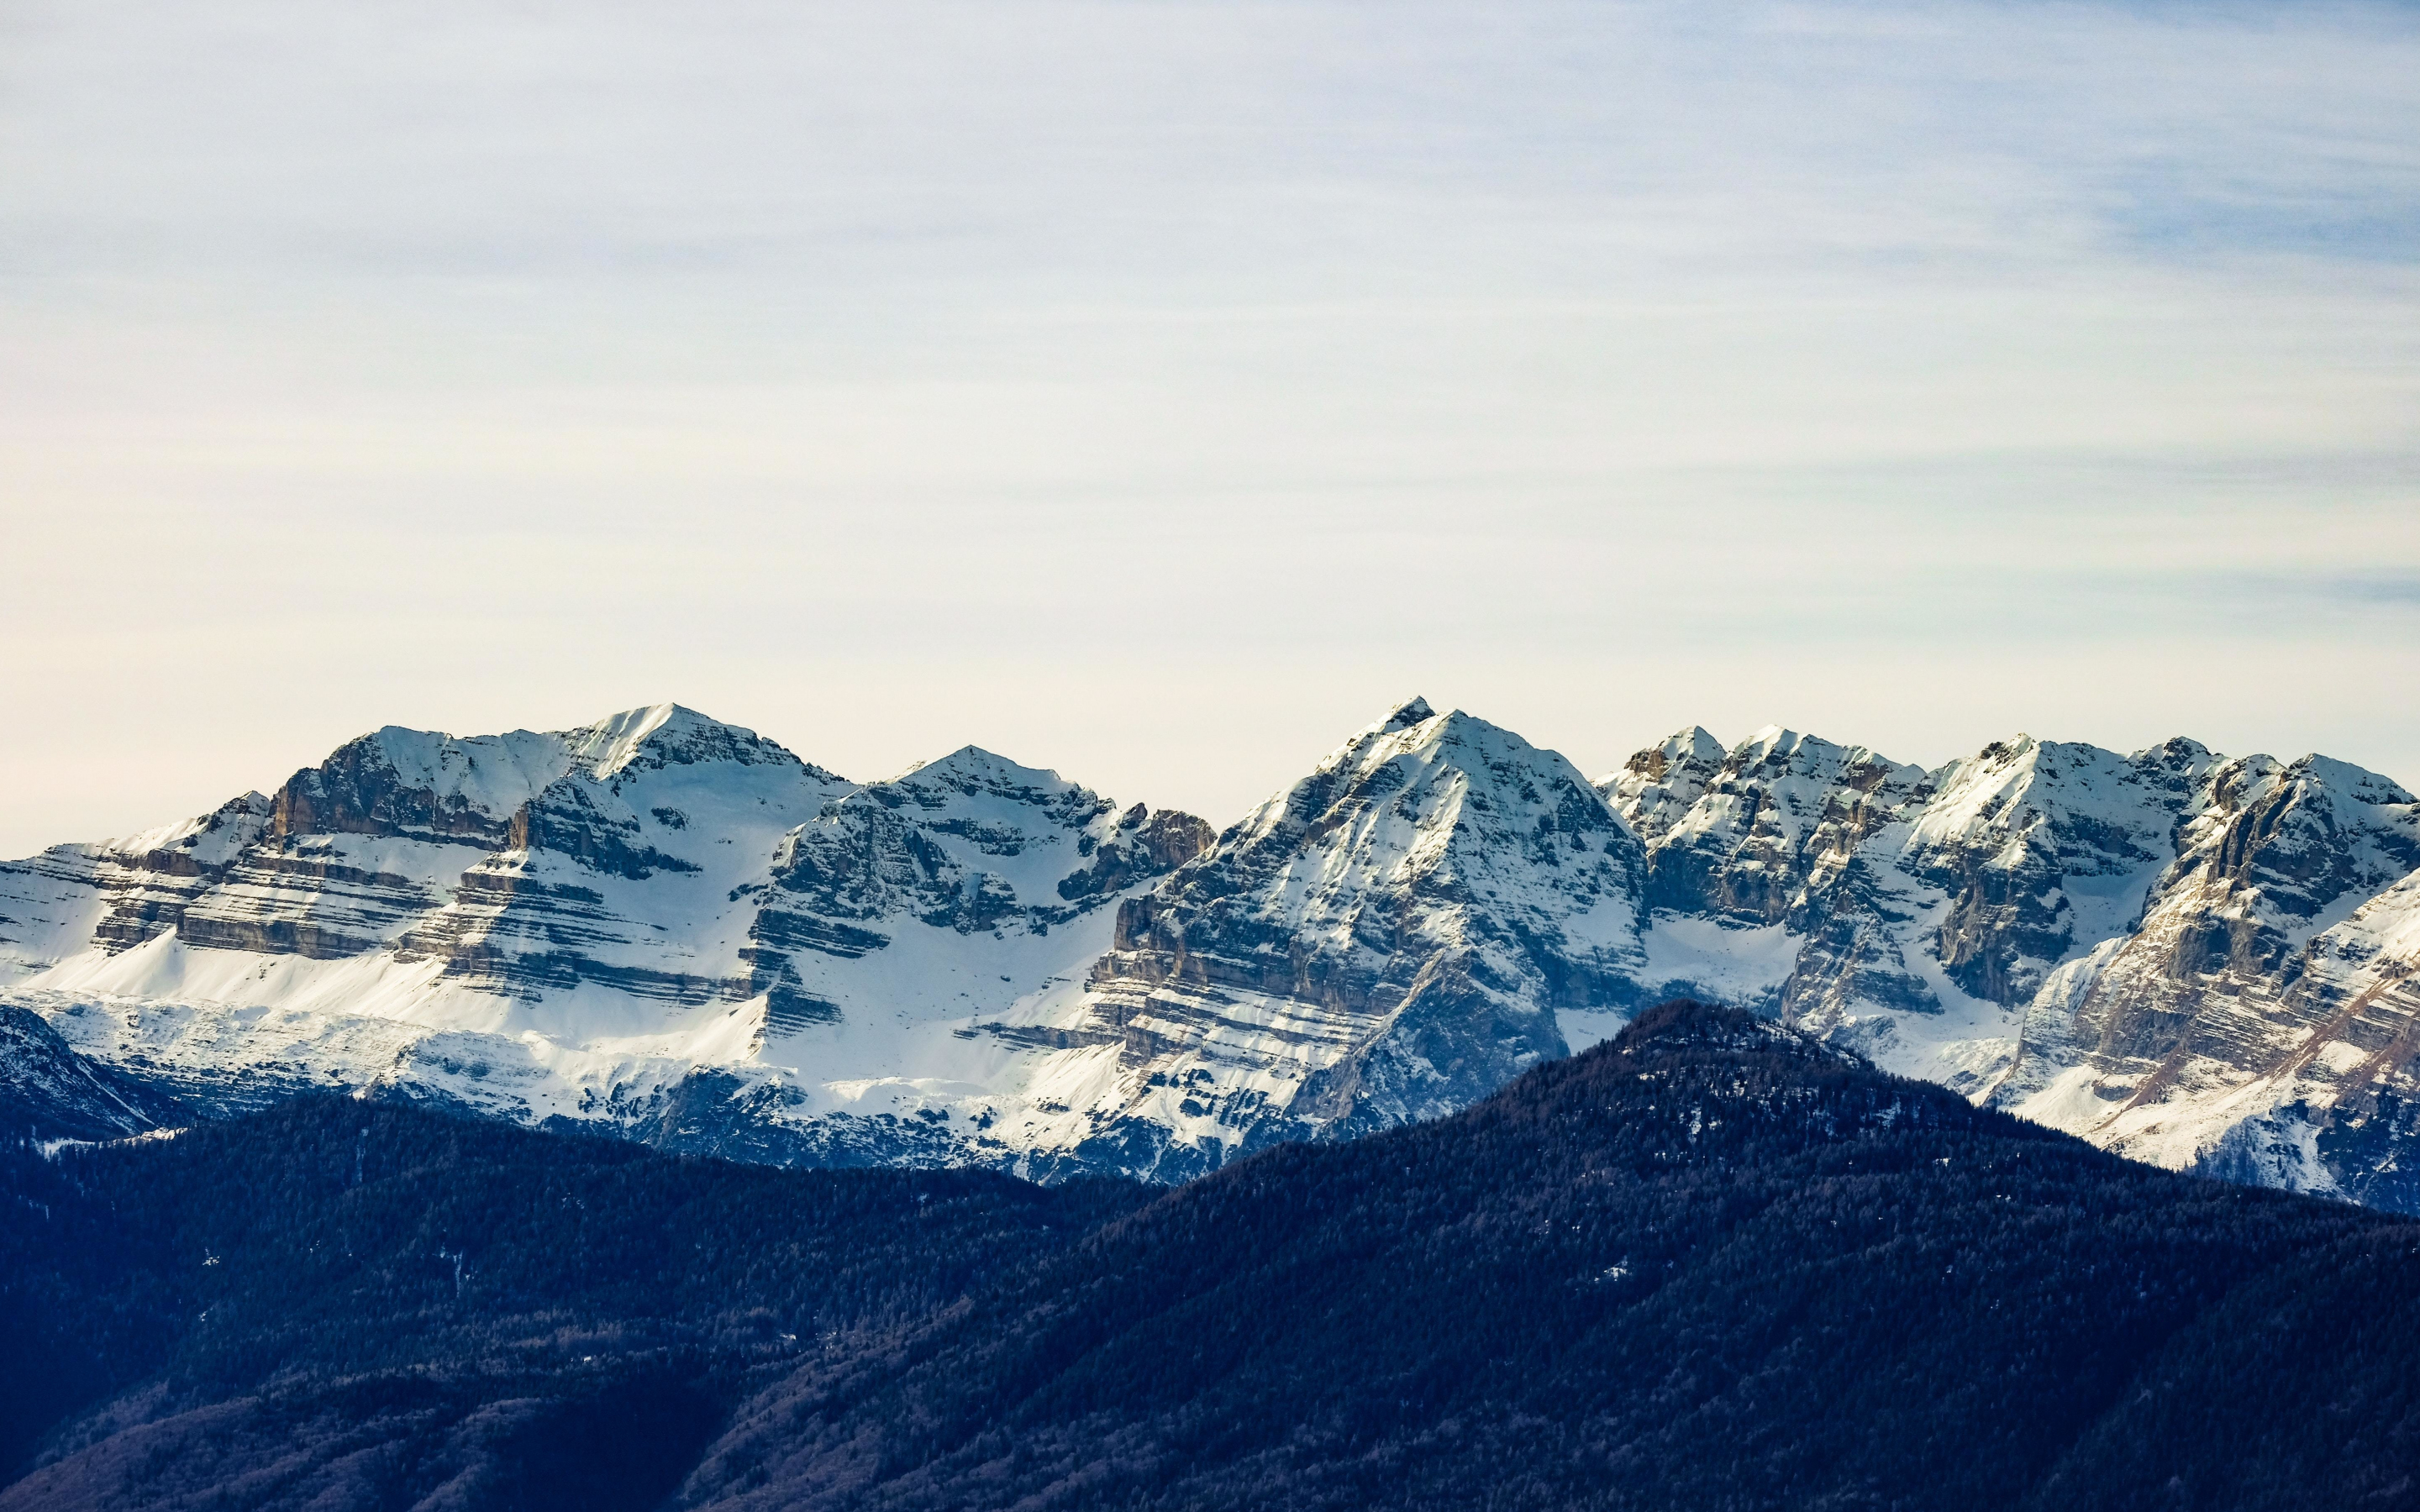 Glacier, mountains, snow mountains, nature, 2880x1800 wallpaper